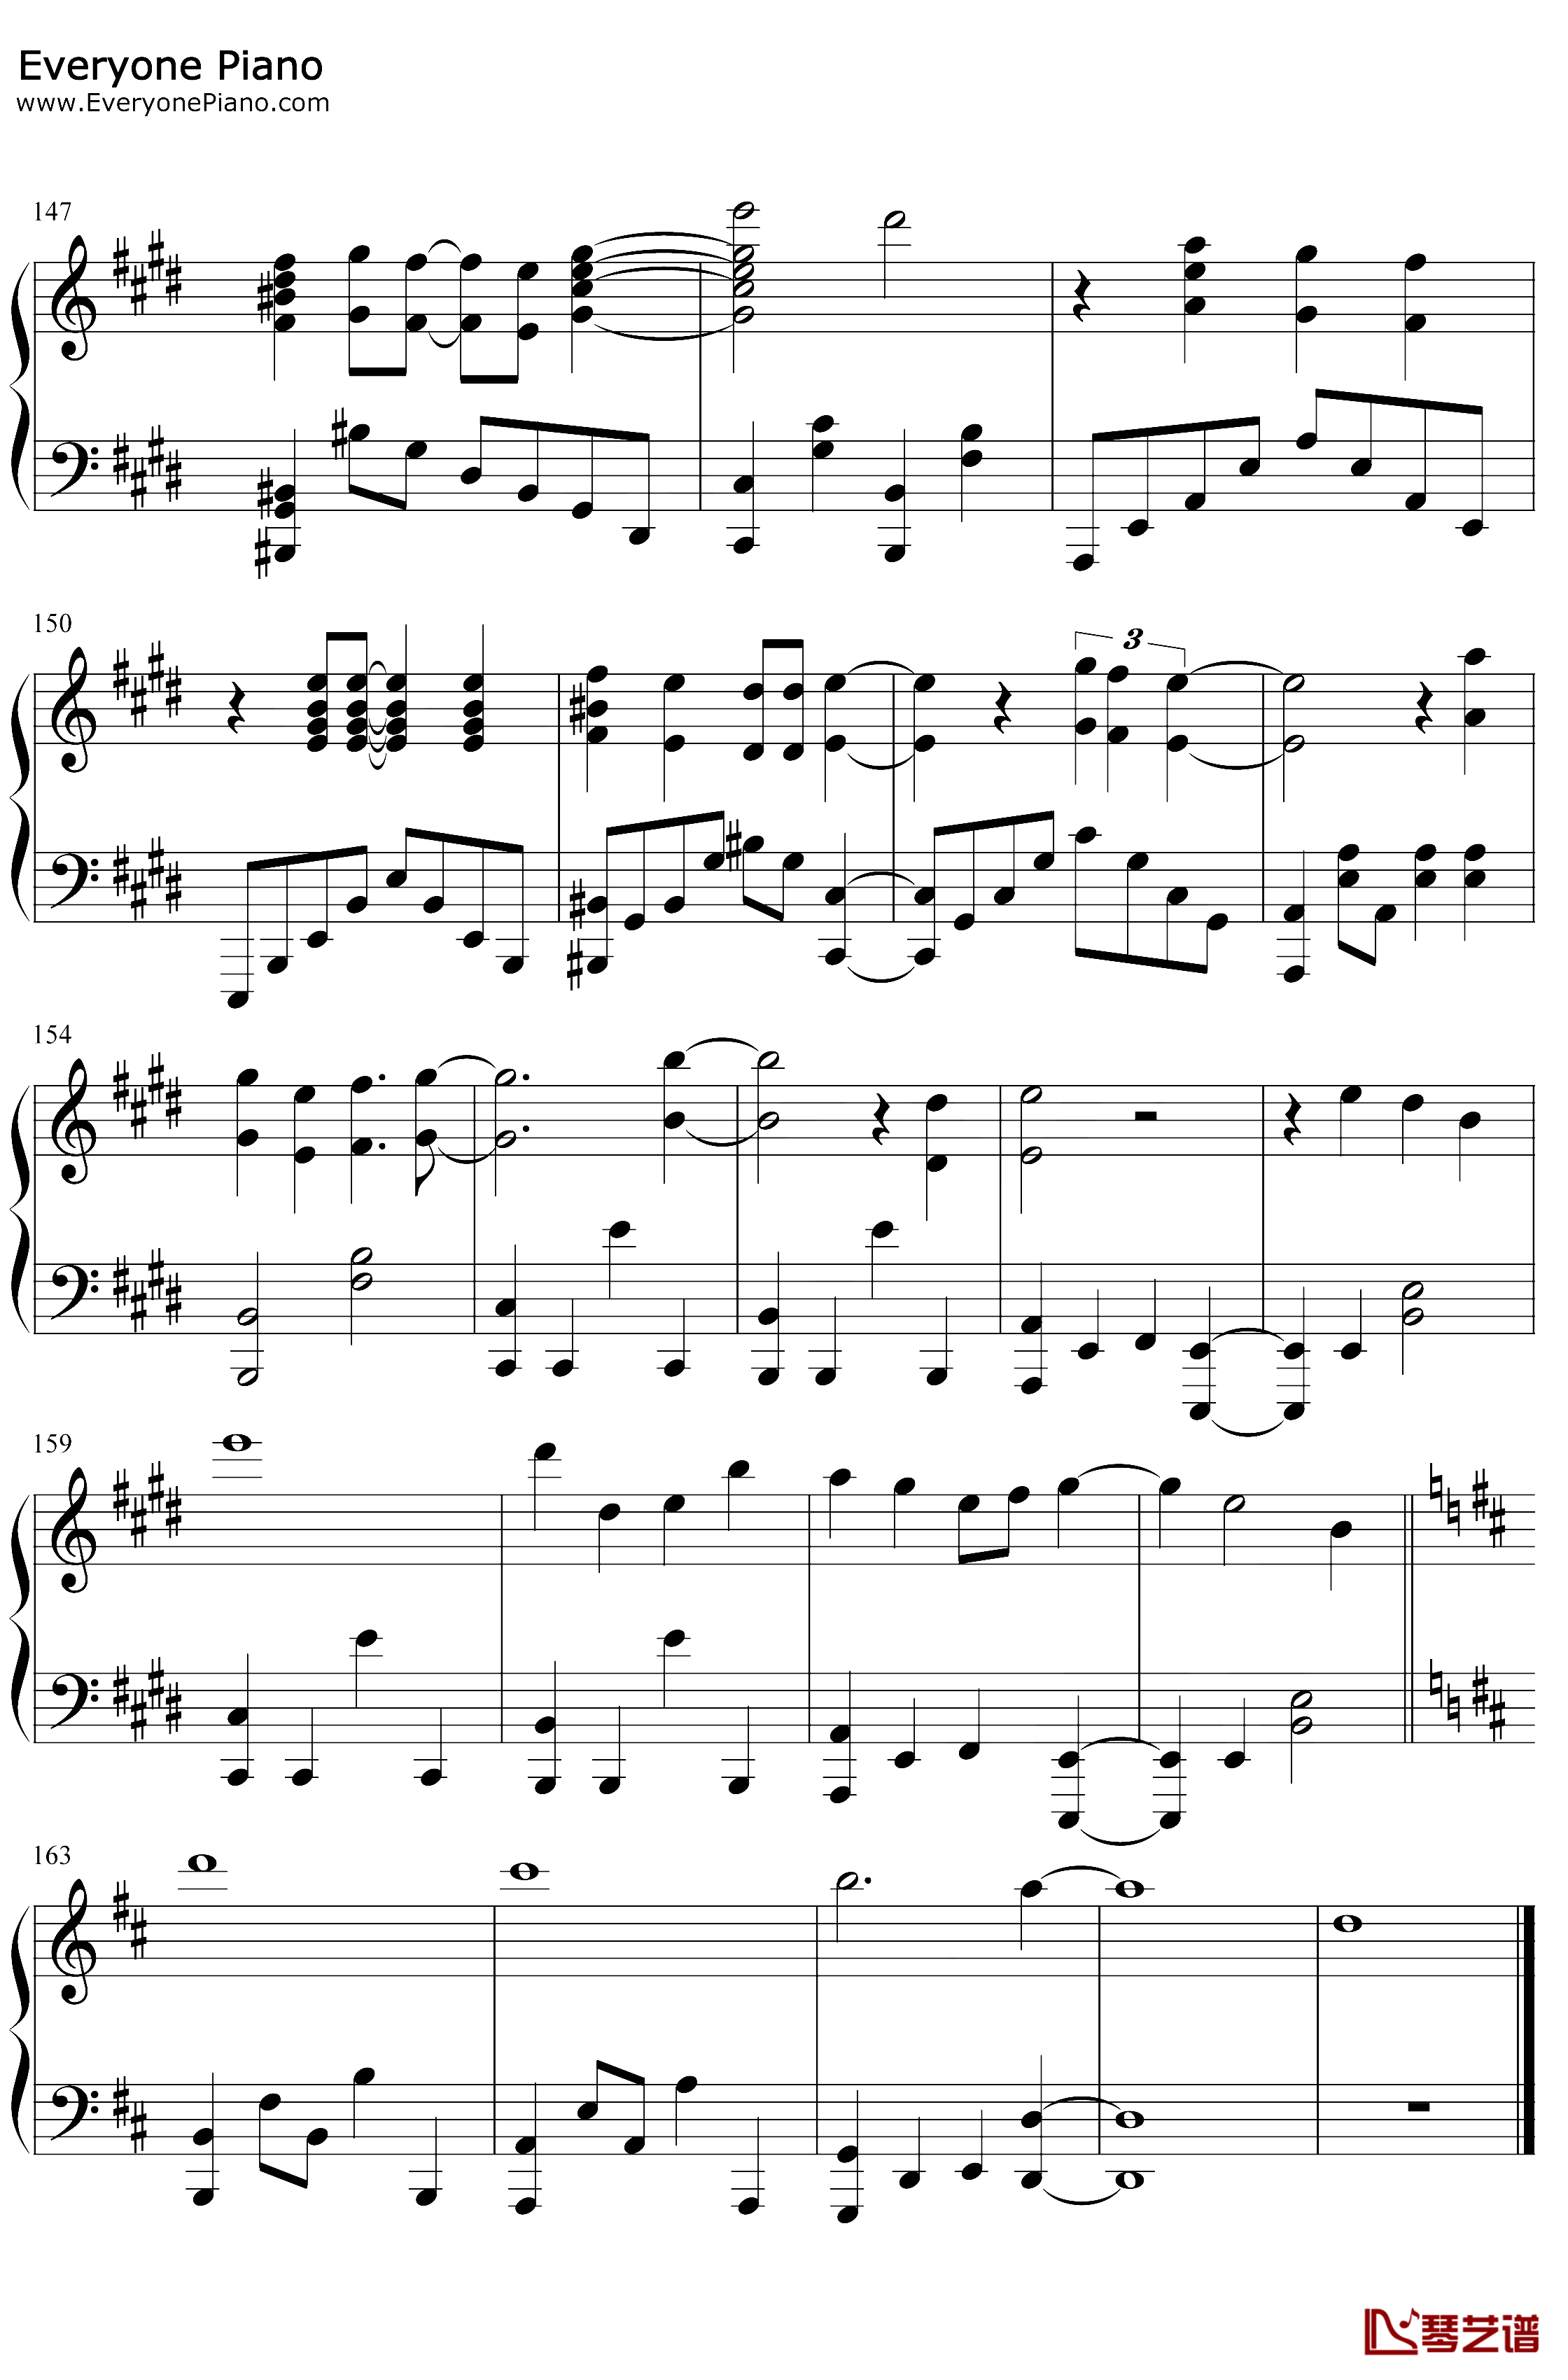 炎钢琴谱-LiSA-鬼灭之刃无限列车篇主题曲9